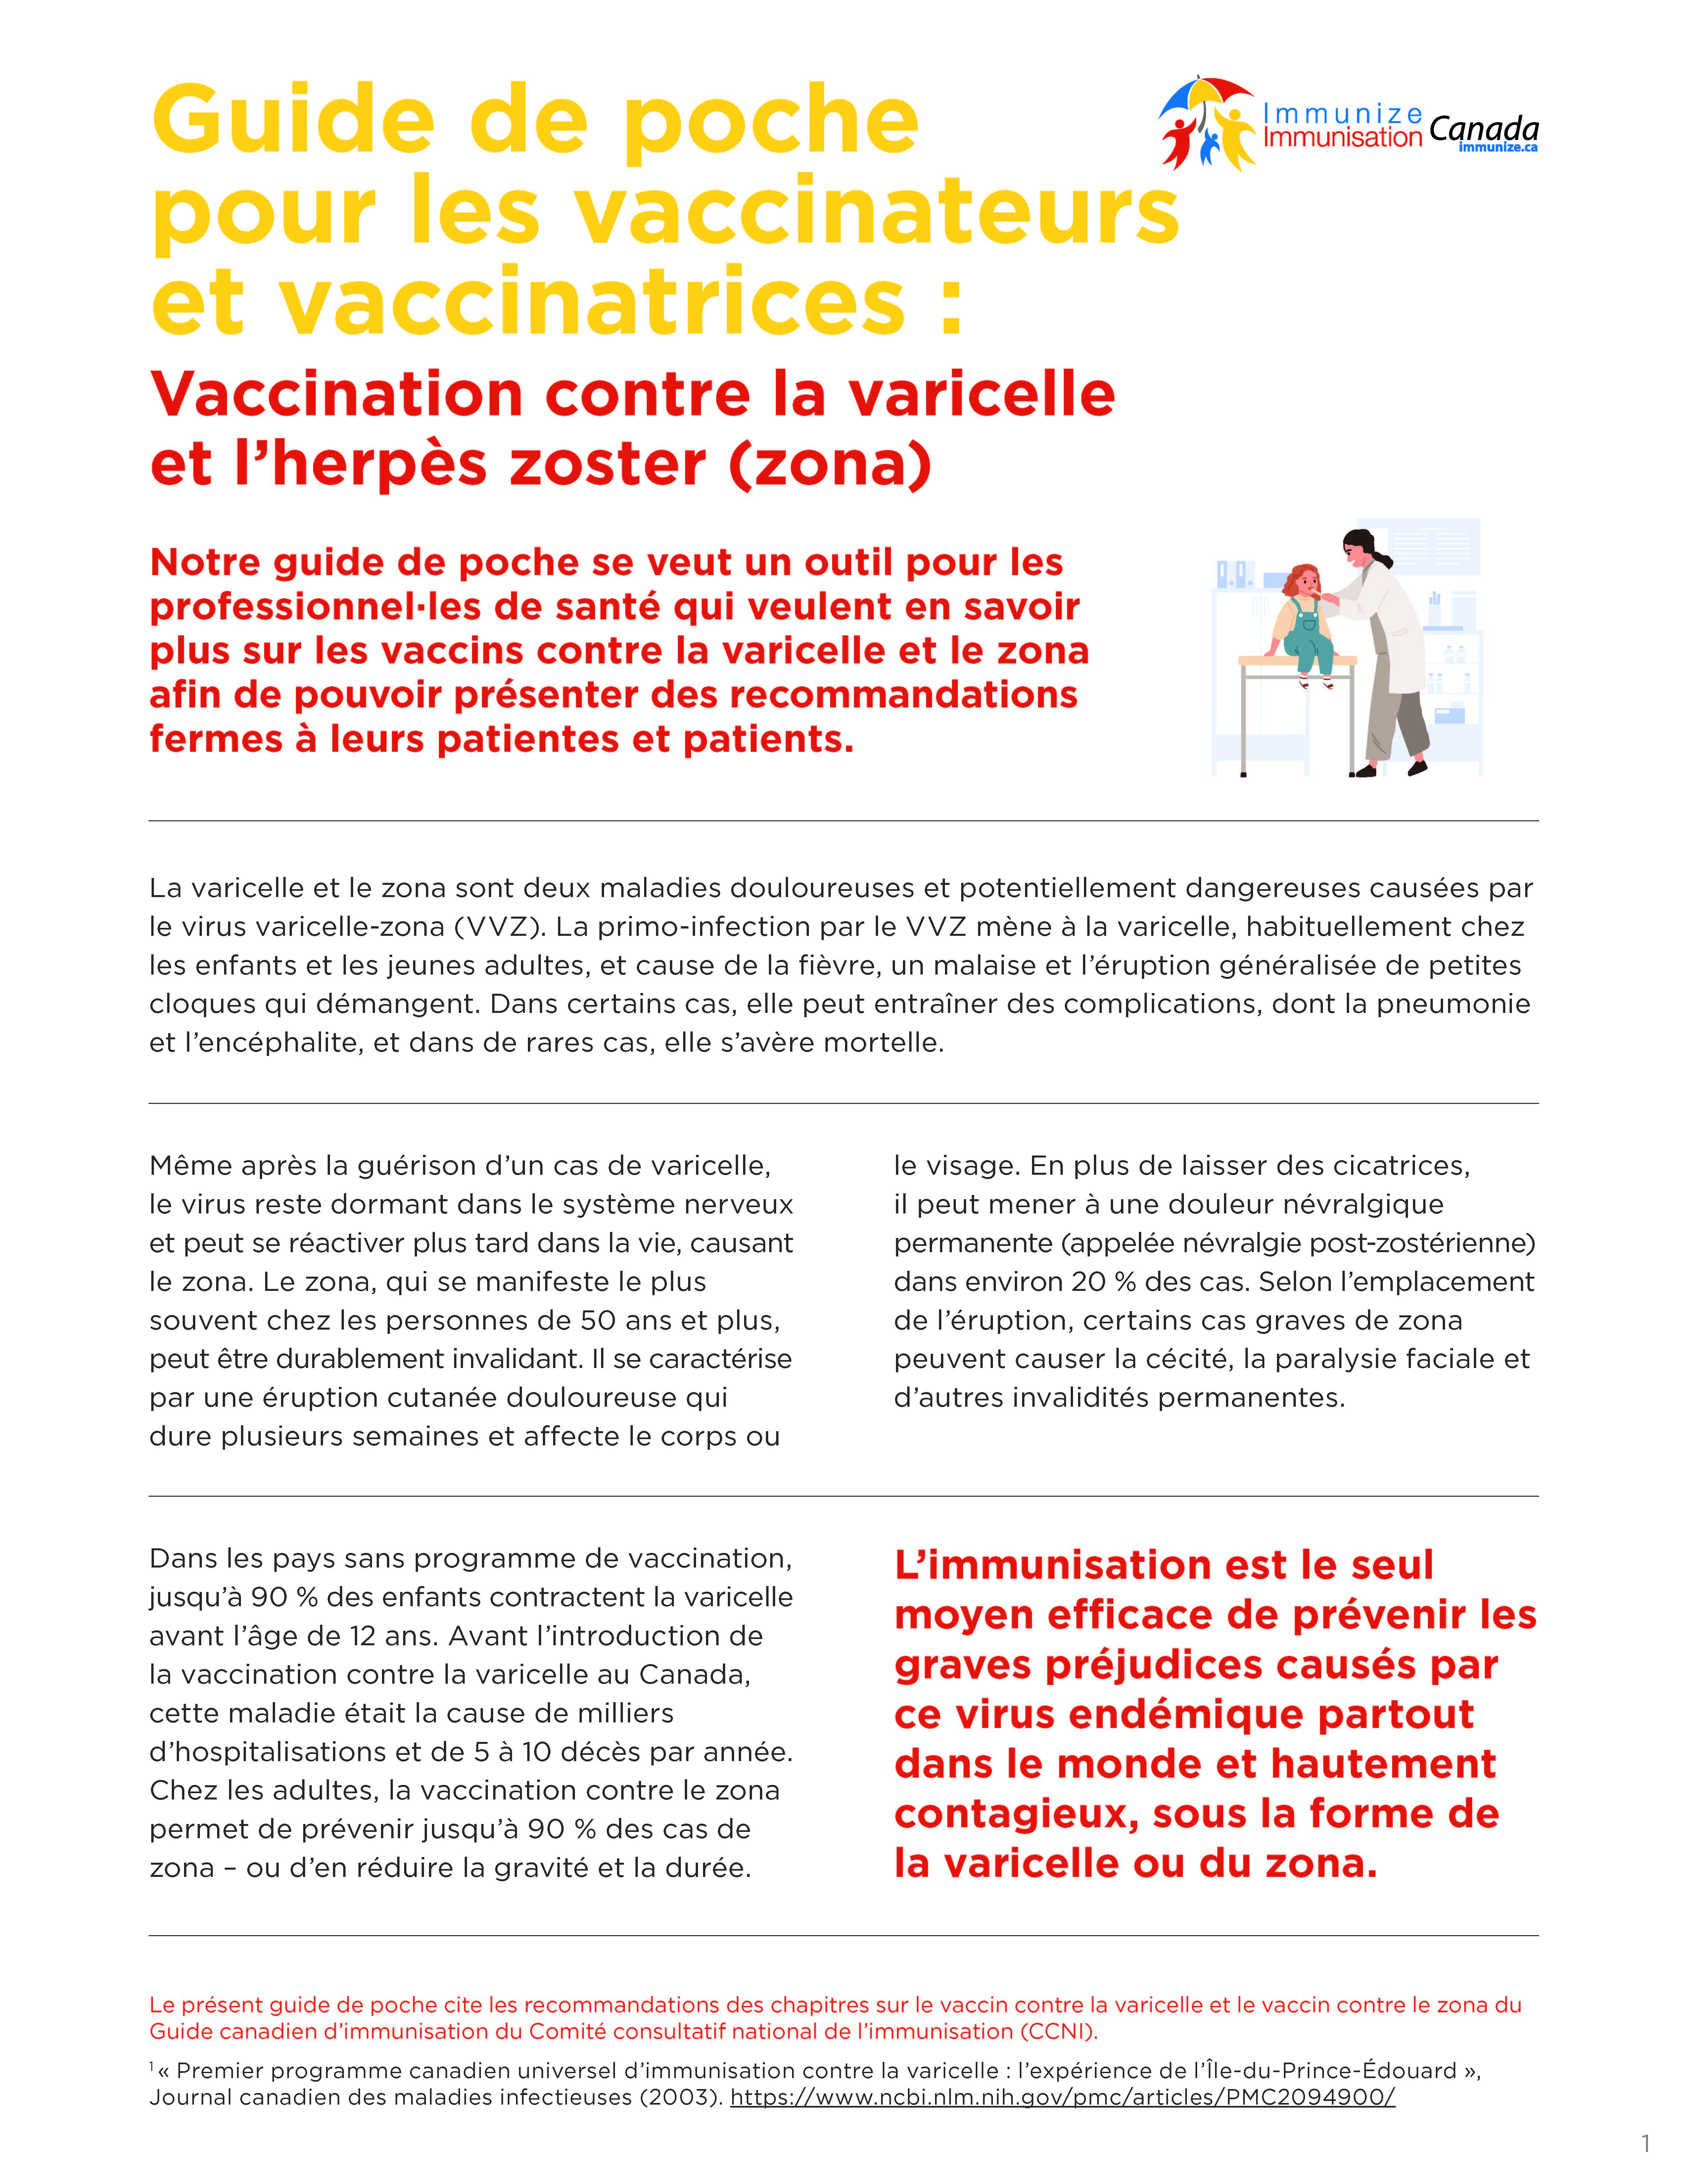 Guide de poche pour les vaccinateurs et vaccinatrices : Vaccination contre la varicelle et l'herpès zoster (zona) 